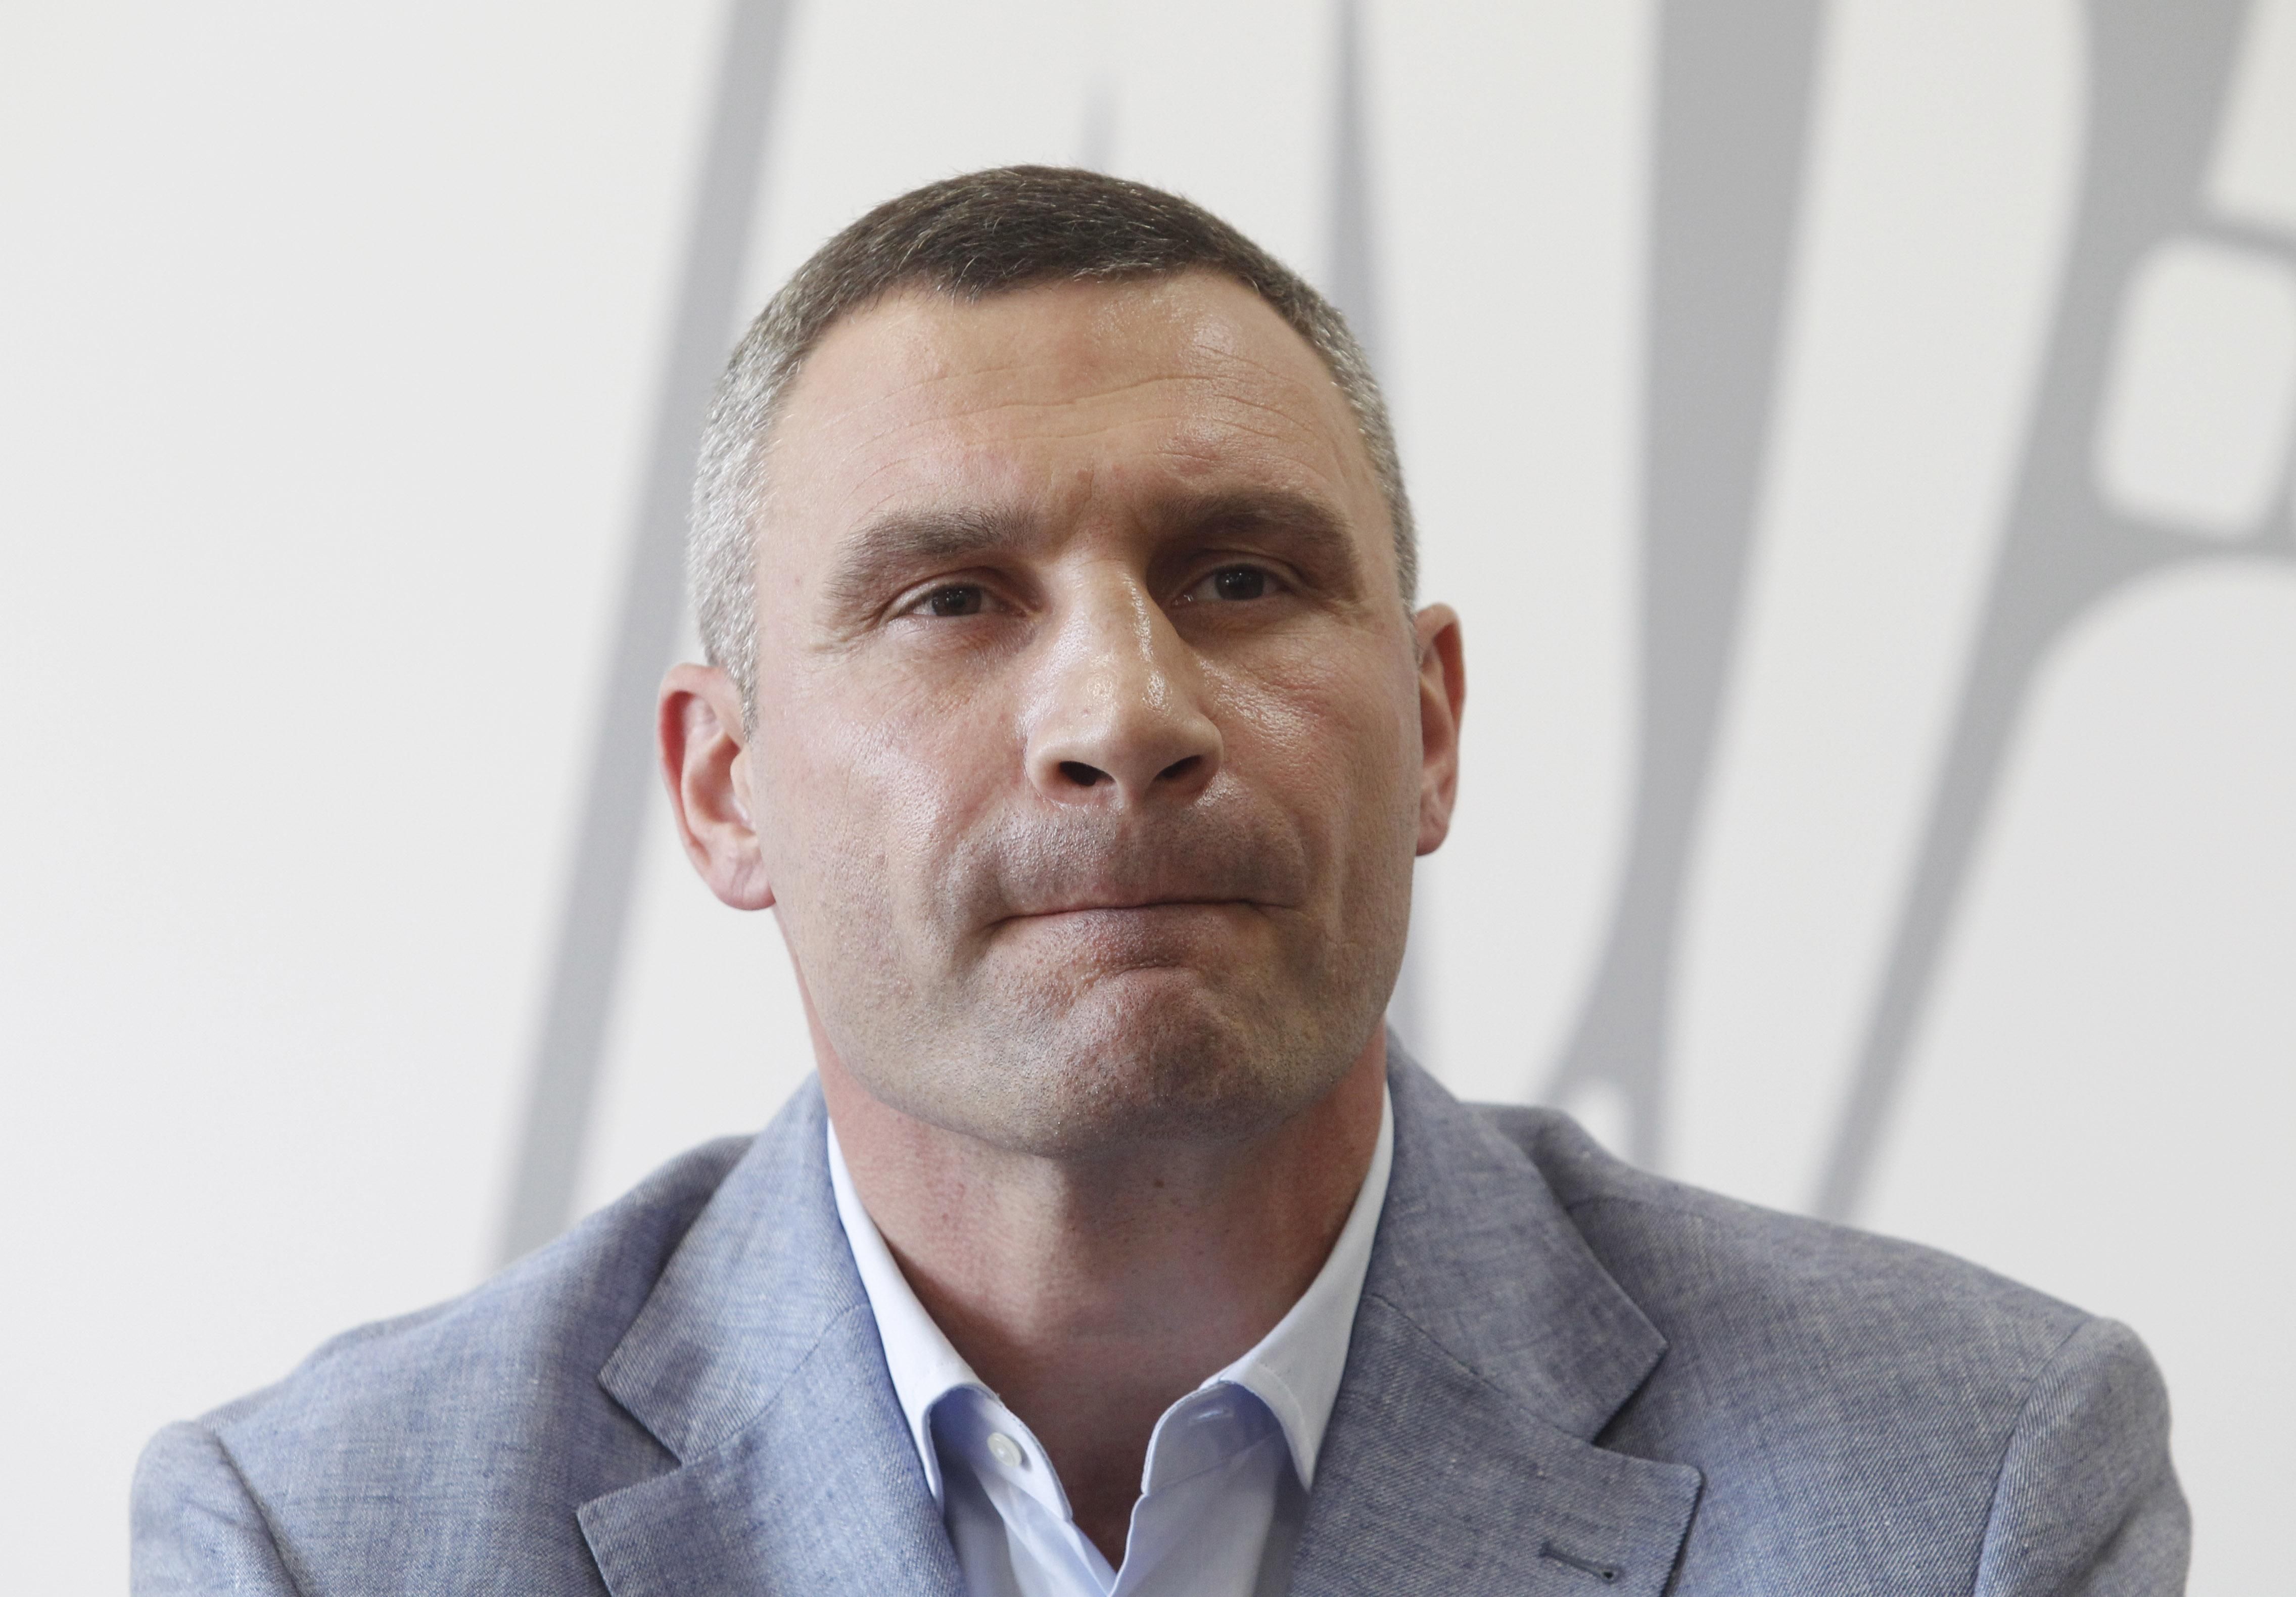 Треба змінити систему, – словацький політик про децентралізацію в Україні